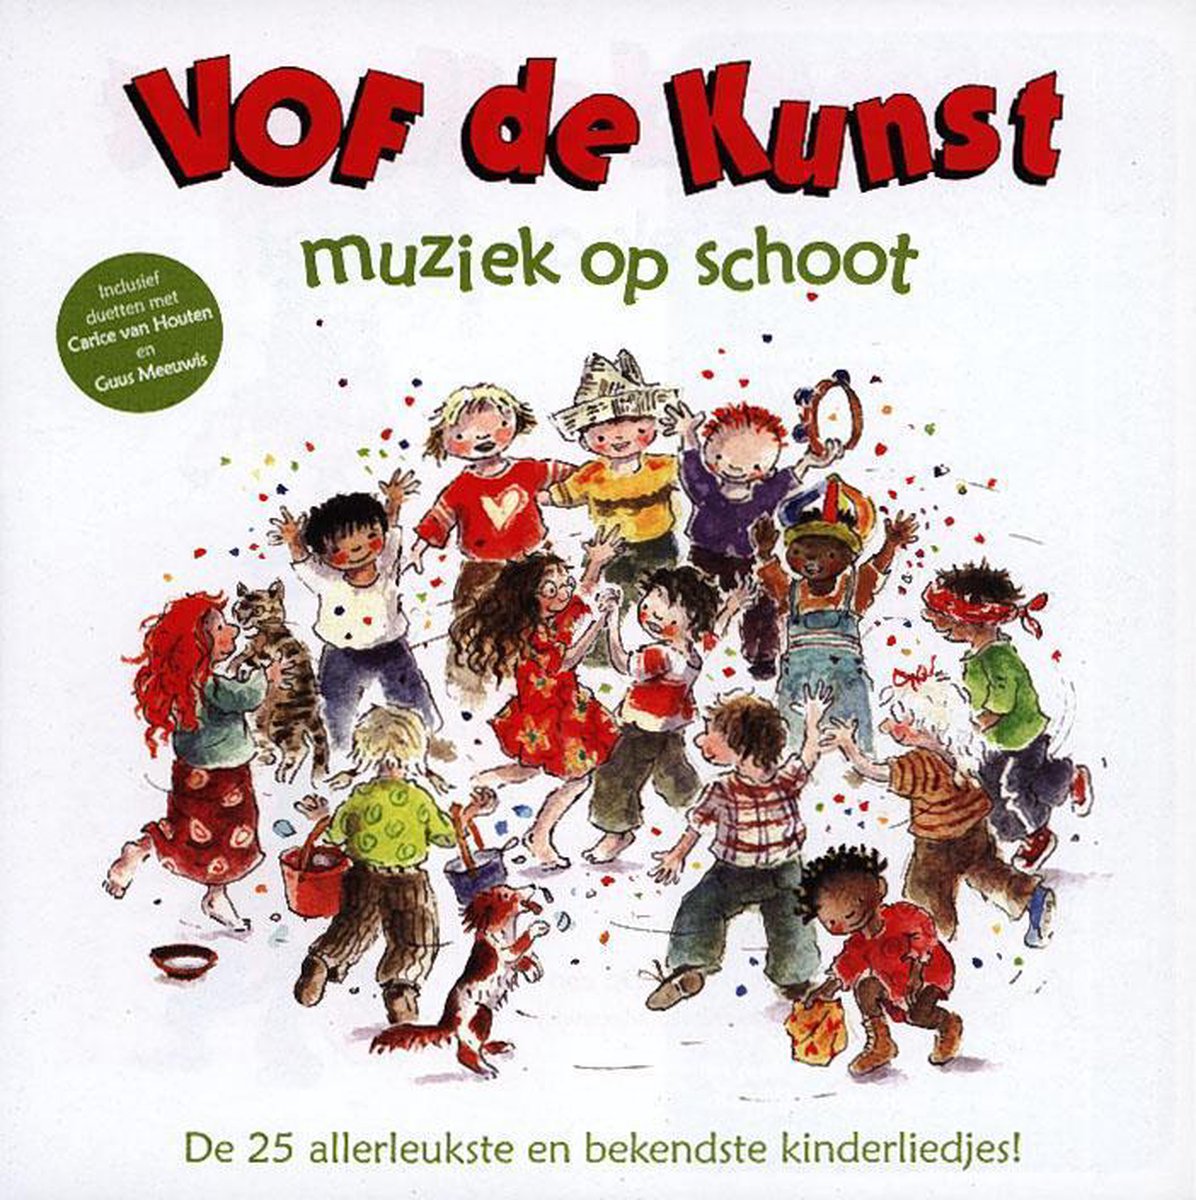 Muziek Op Schoot (CD) - Vof de Kunst